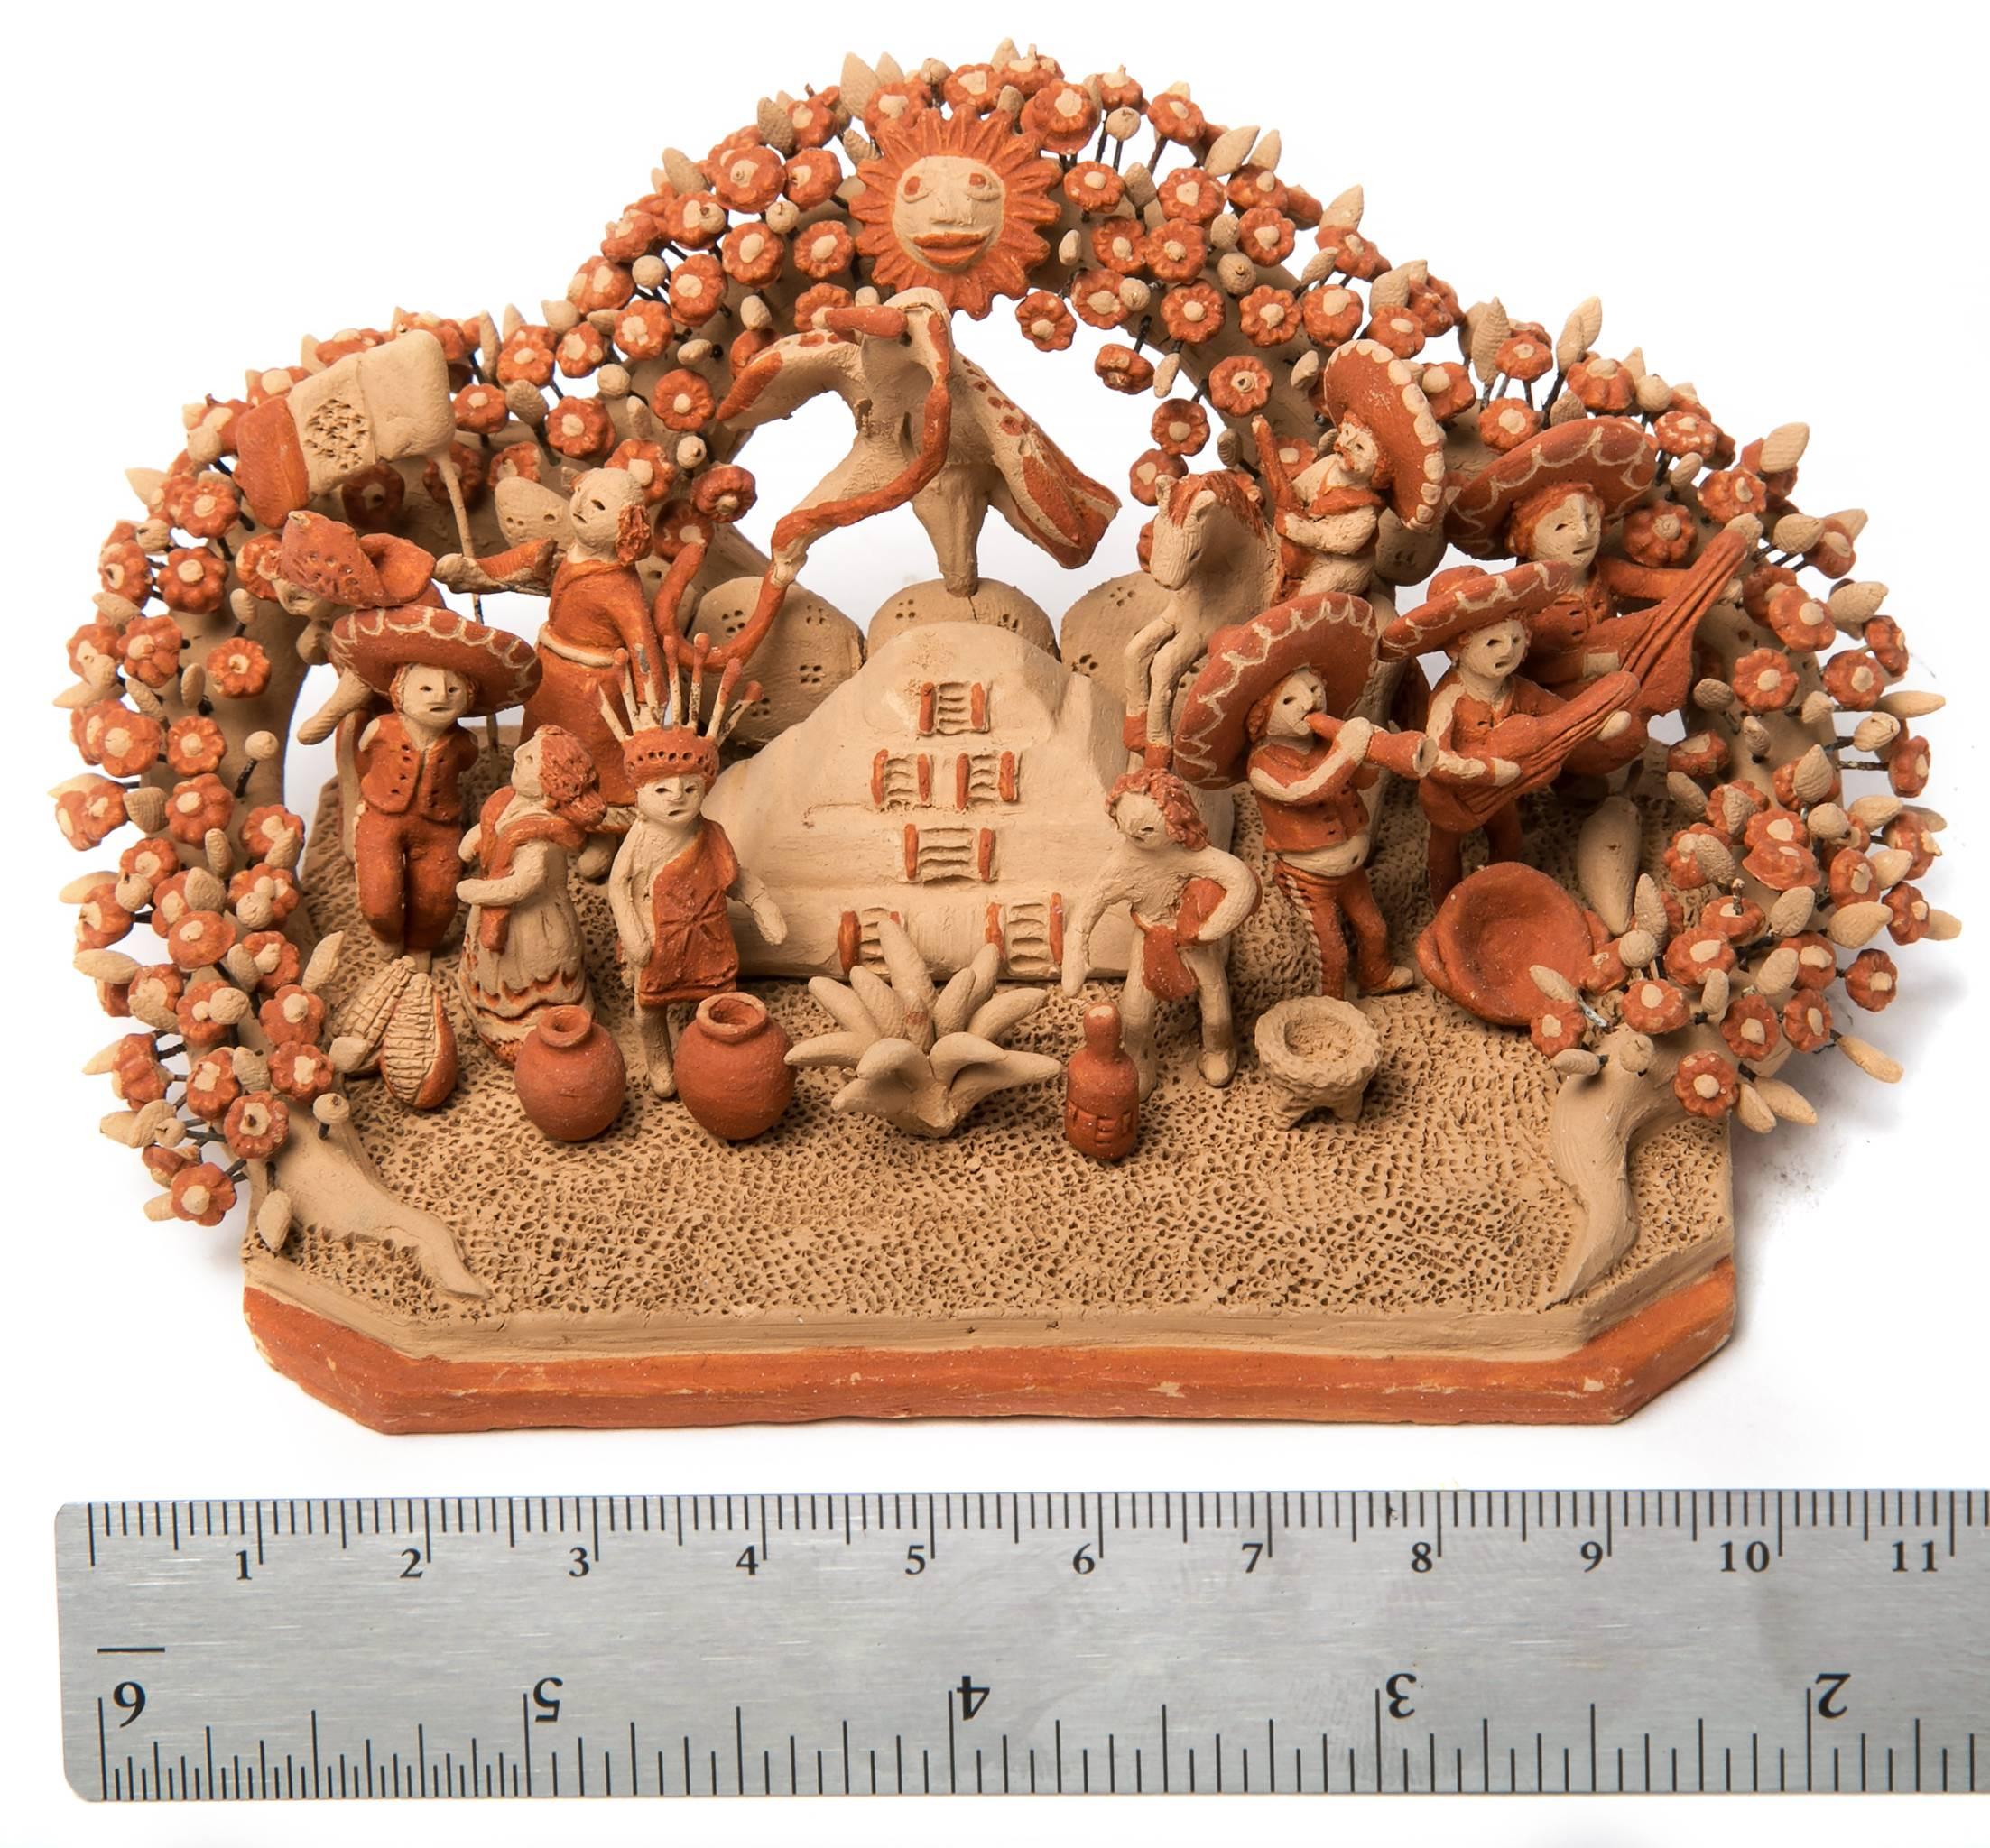 Miguel Vazquez Gutierrez Figurative Sculpture - 5'' Cultura Mexicana / Ceramics Mexican Folk Art Miniature 